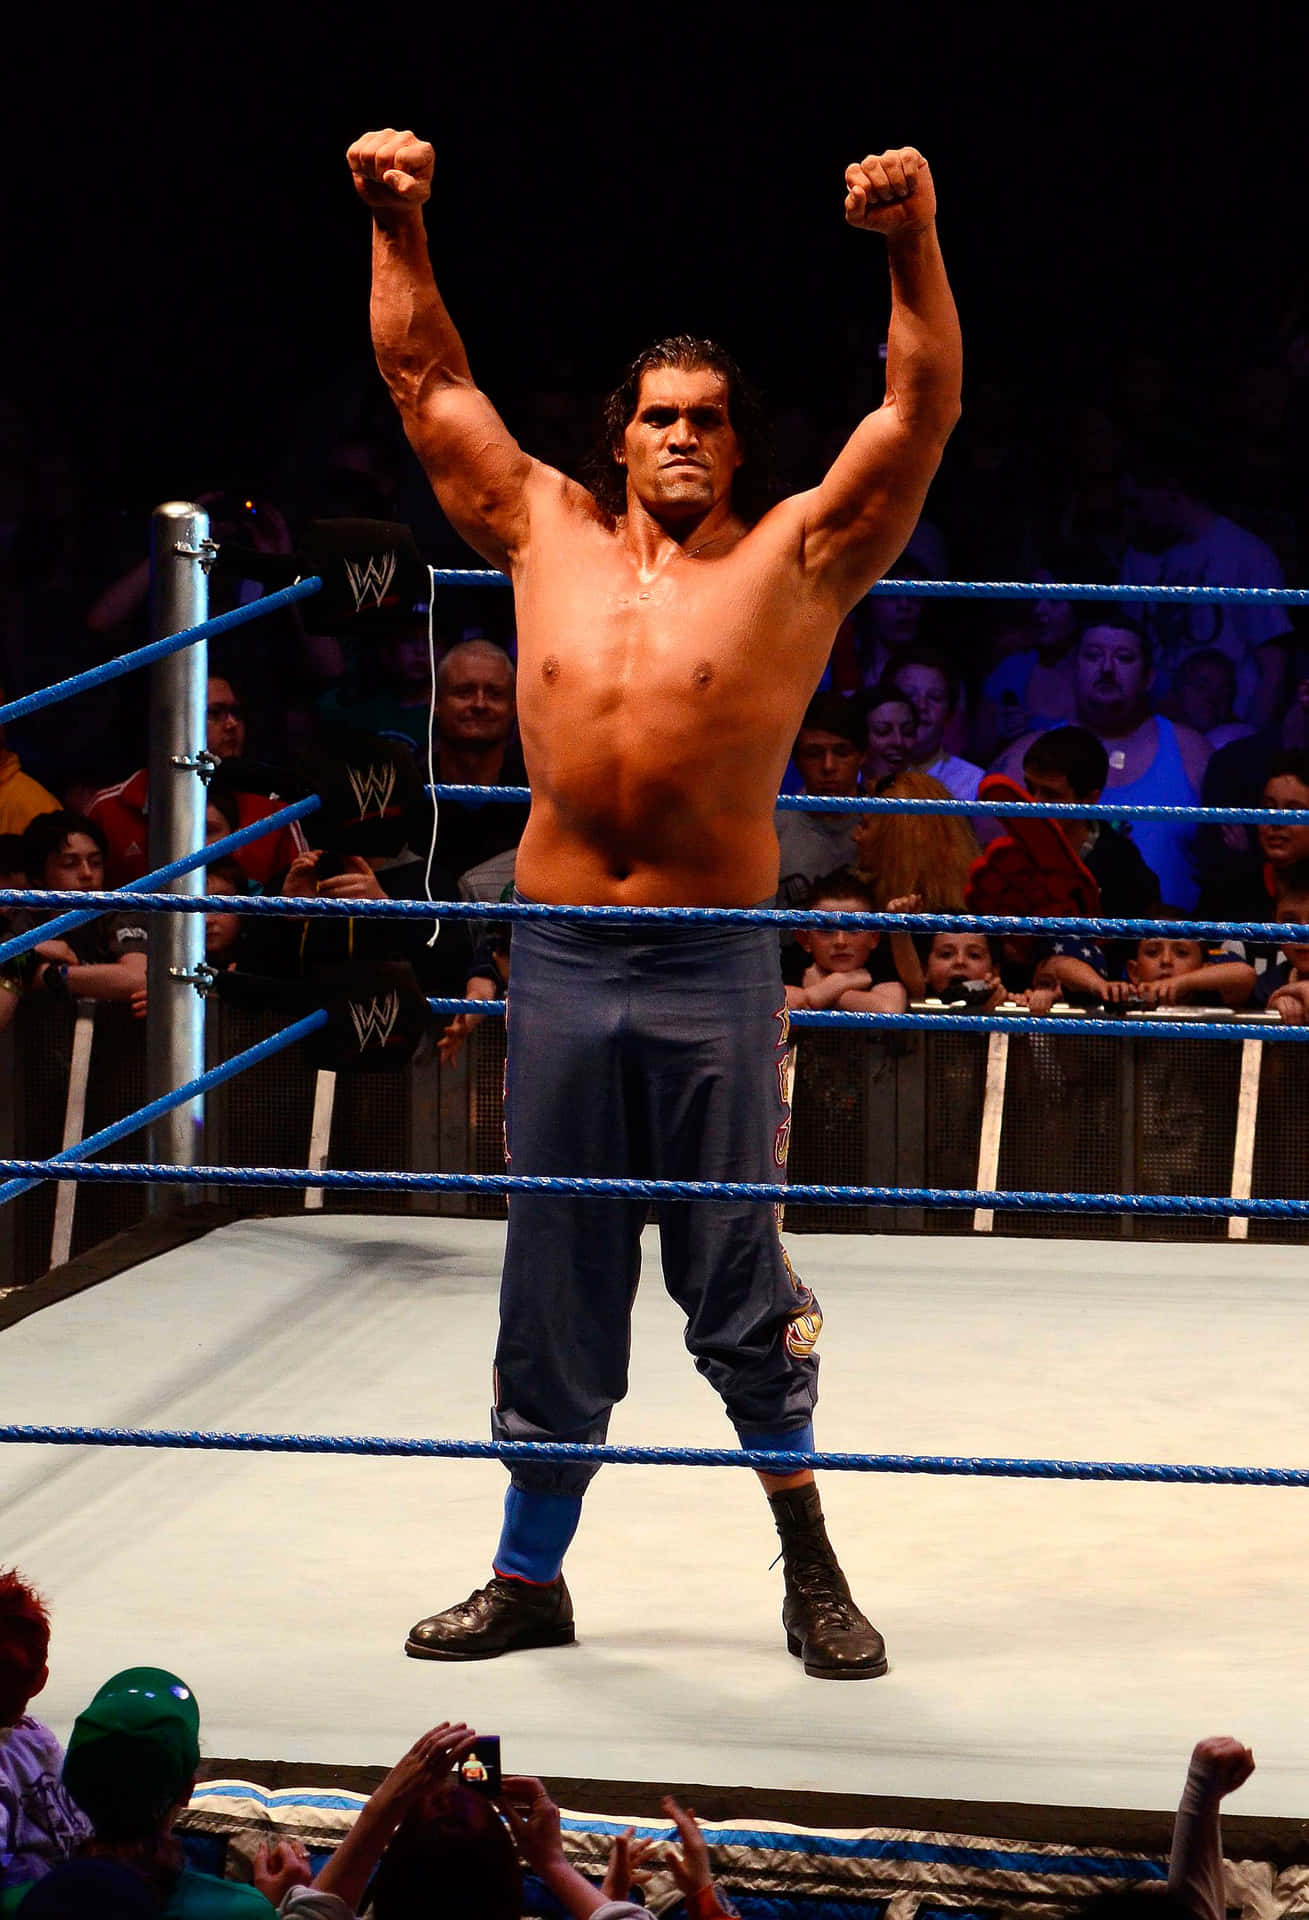 Indisk Wrestler Den Store Khali WWE Smack Down 2012 Wallpaper